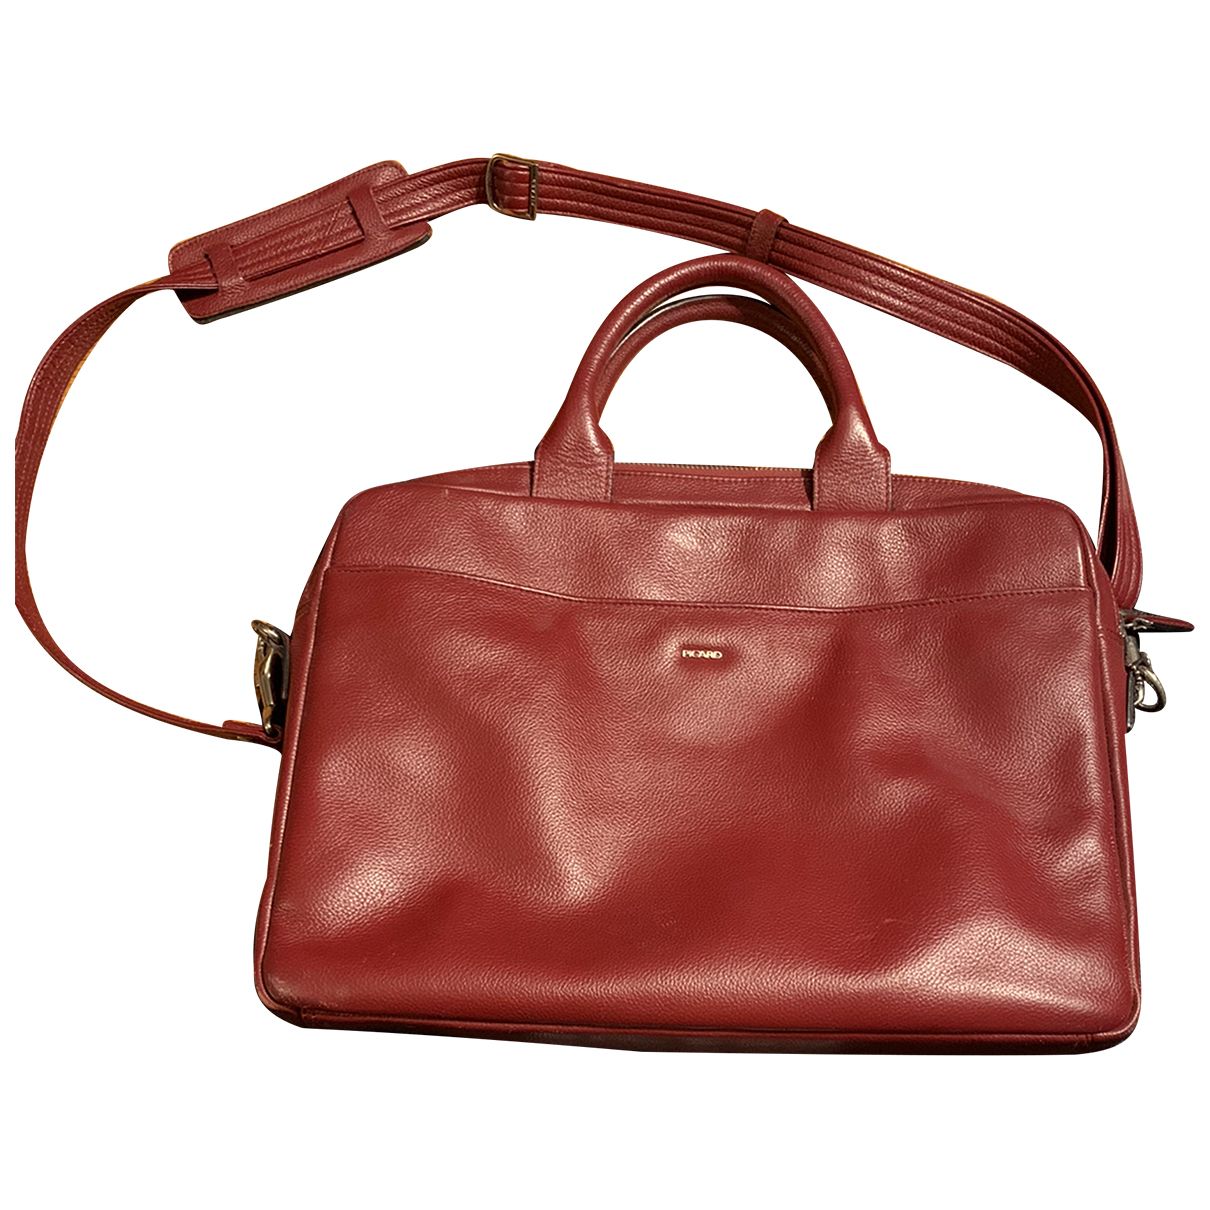 Leather handbag Picard